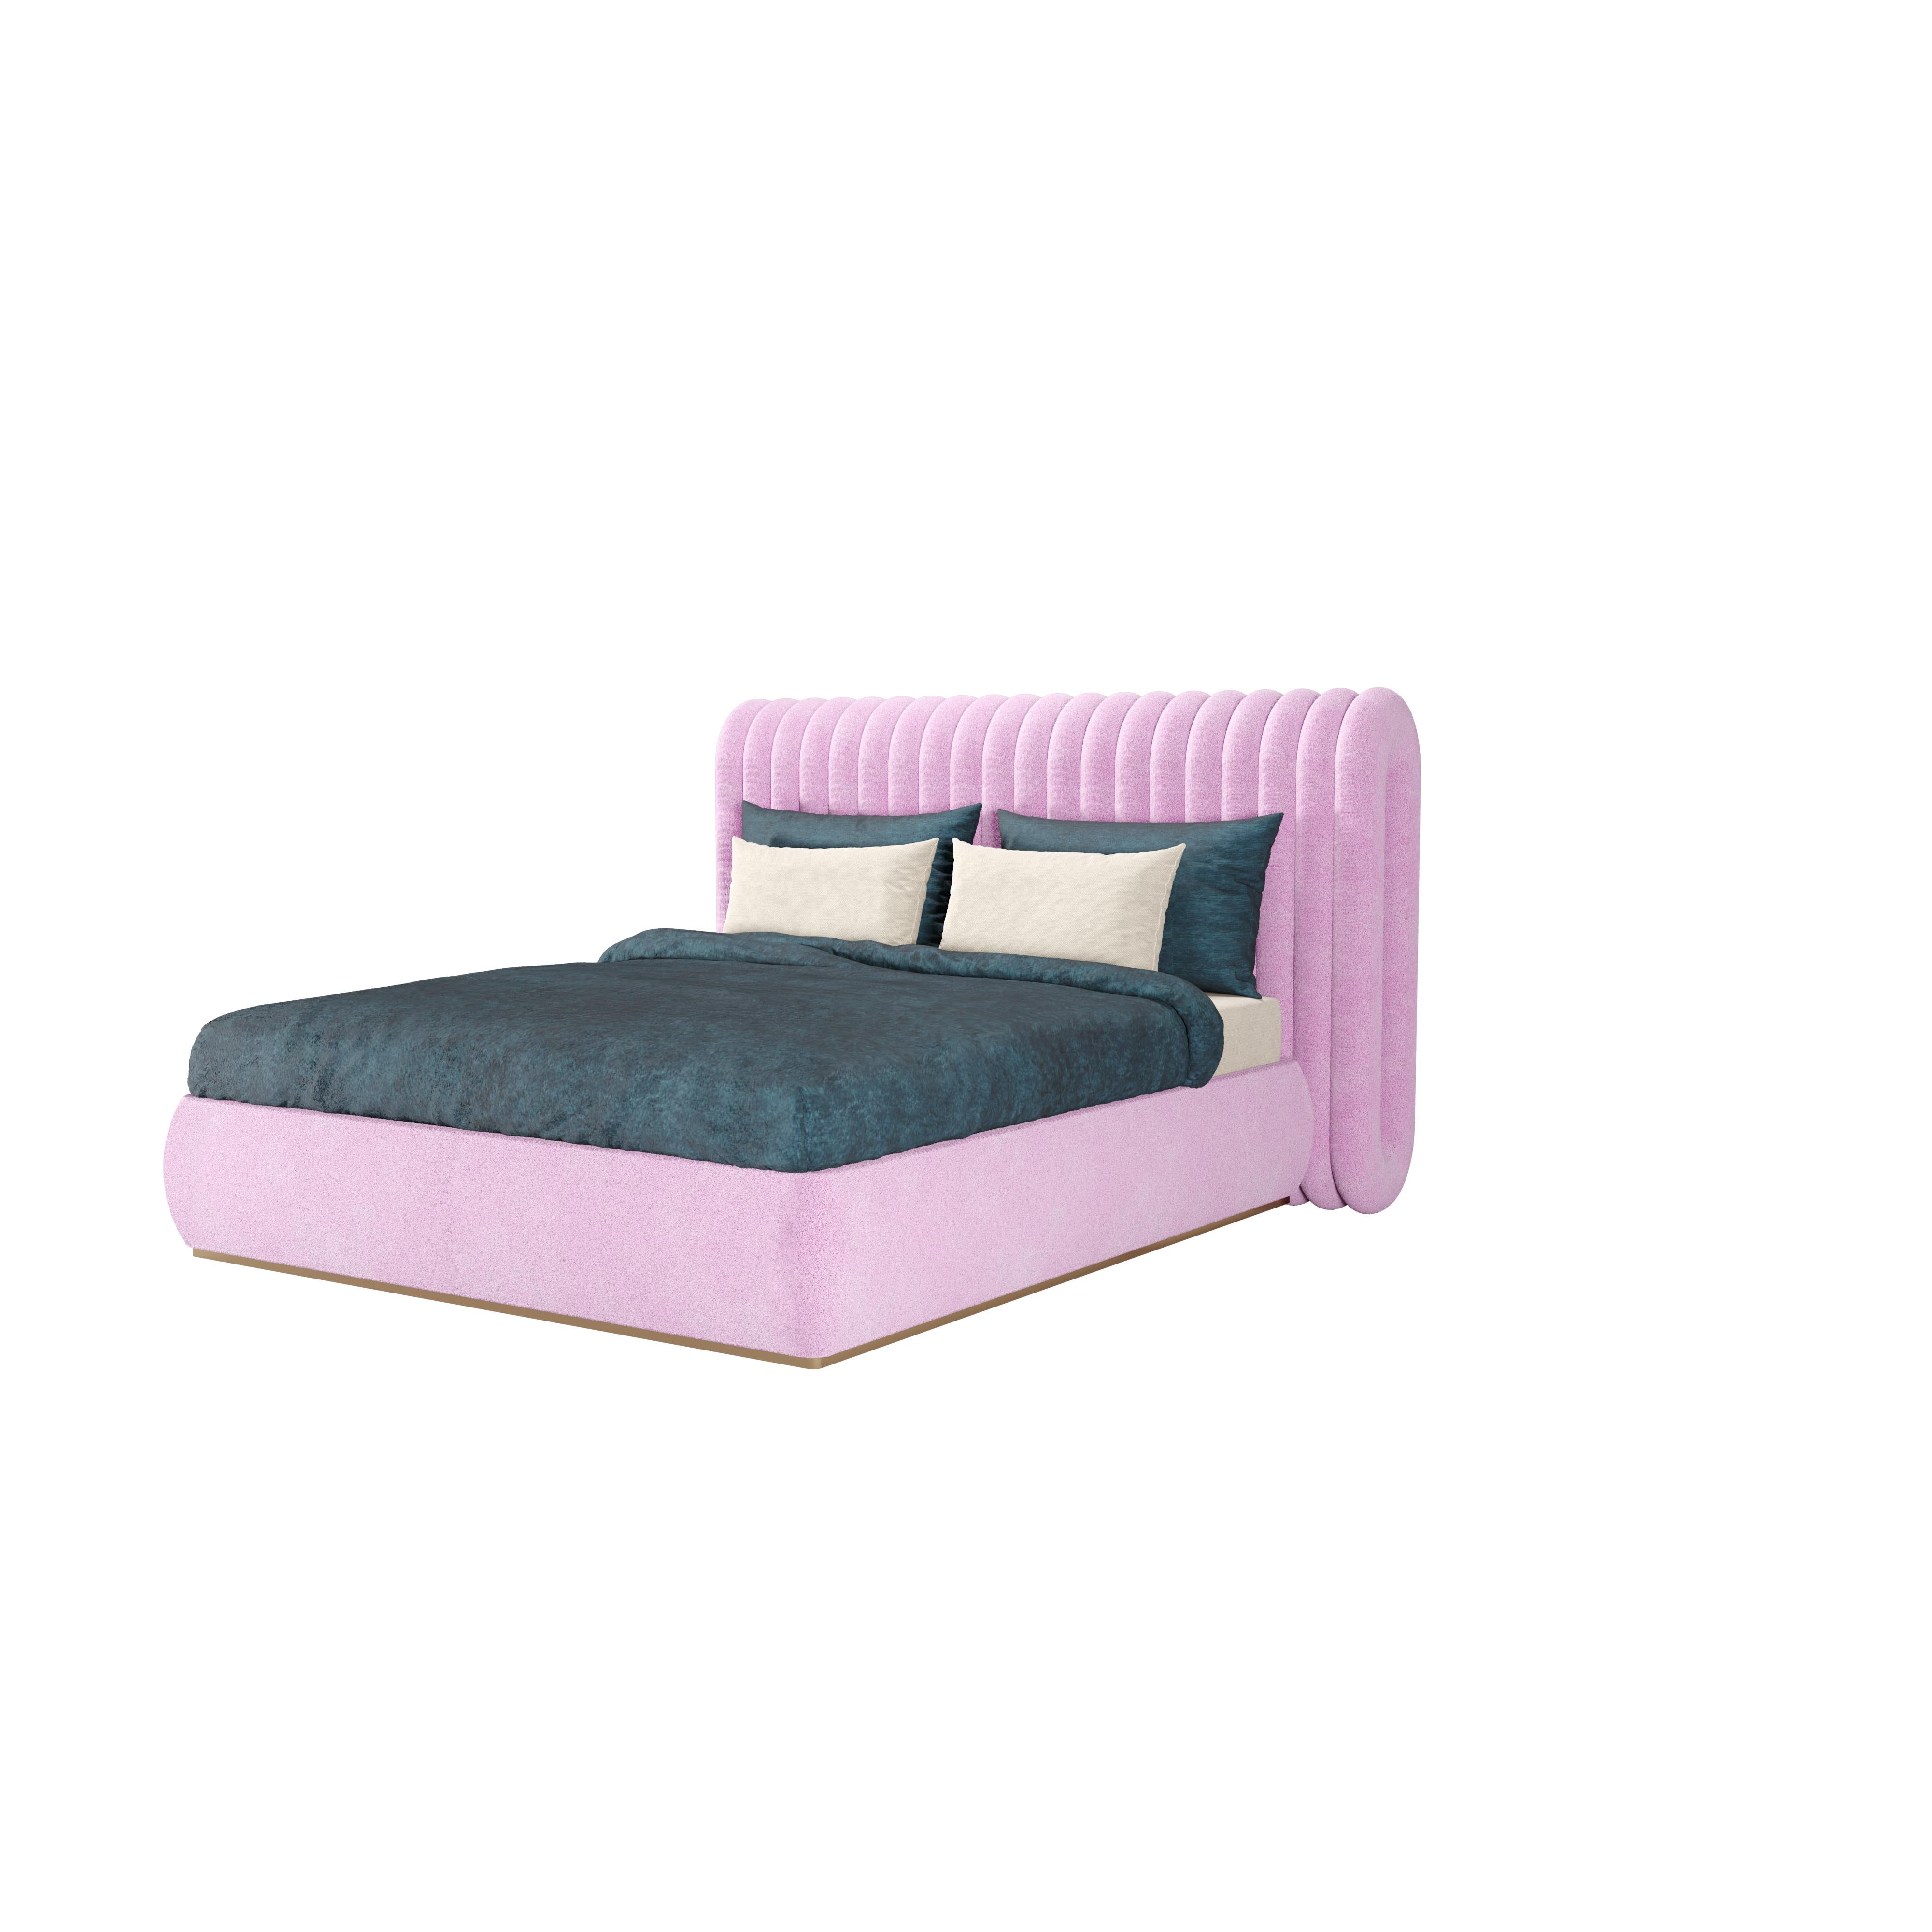 Velvet 21st Century Post-Future II Bed Upholstery For Sale